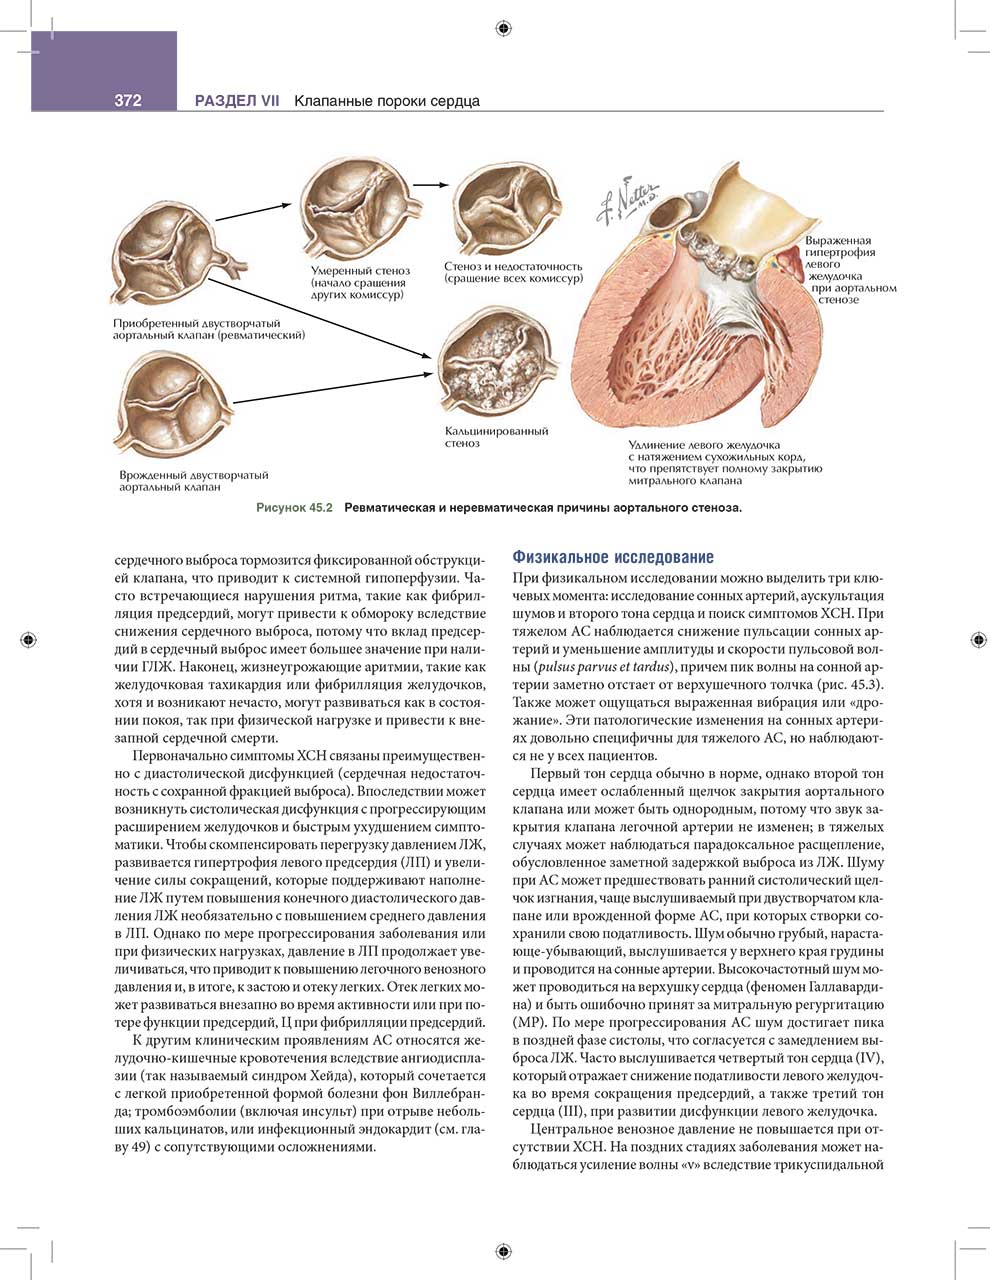 Ревматическая и неревматическая причины аортального стеноза.